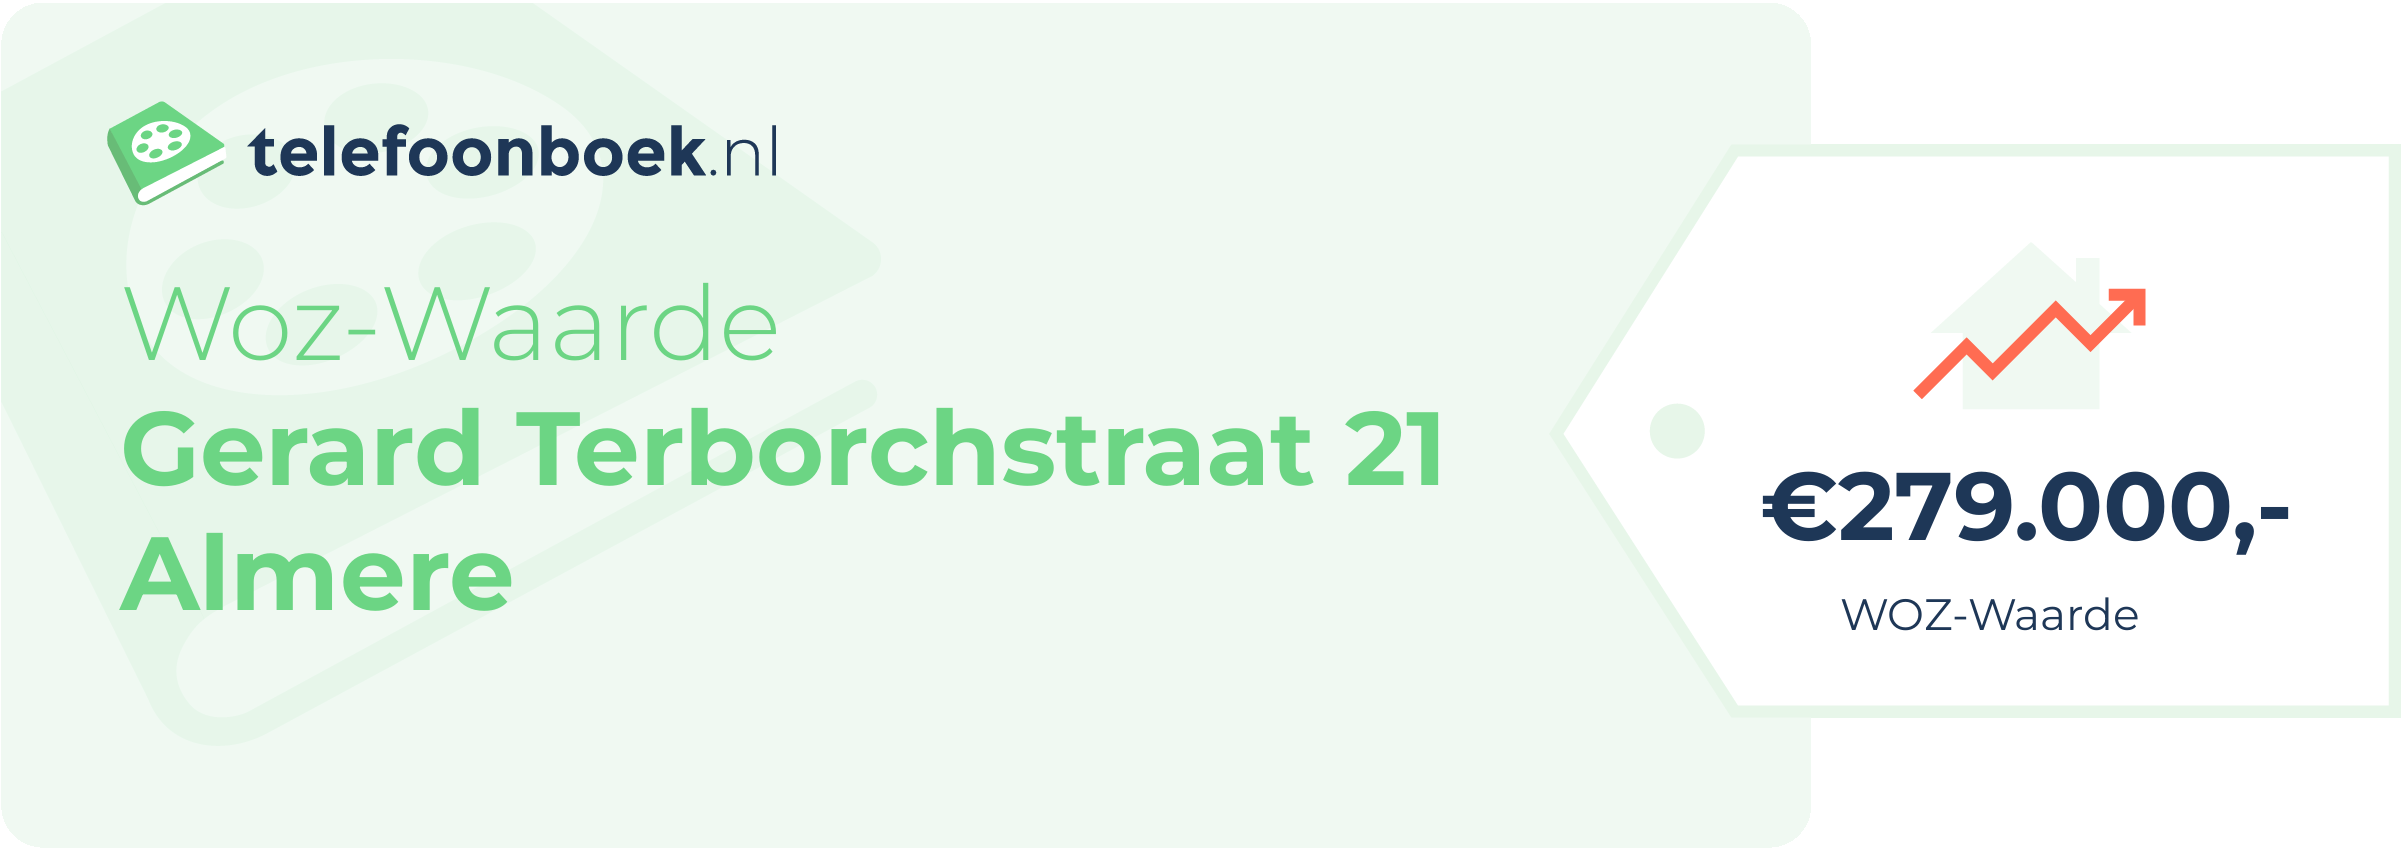 WOZ-waarde Gerard Terborchstraat 21 Almere